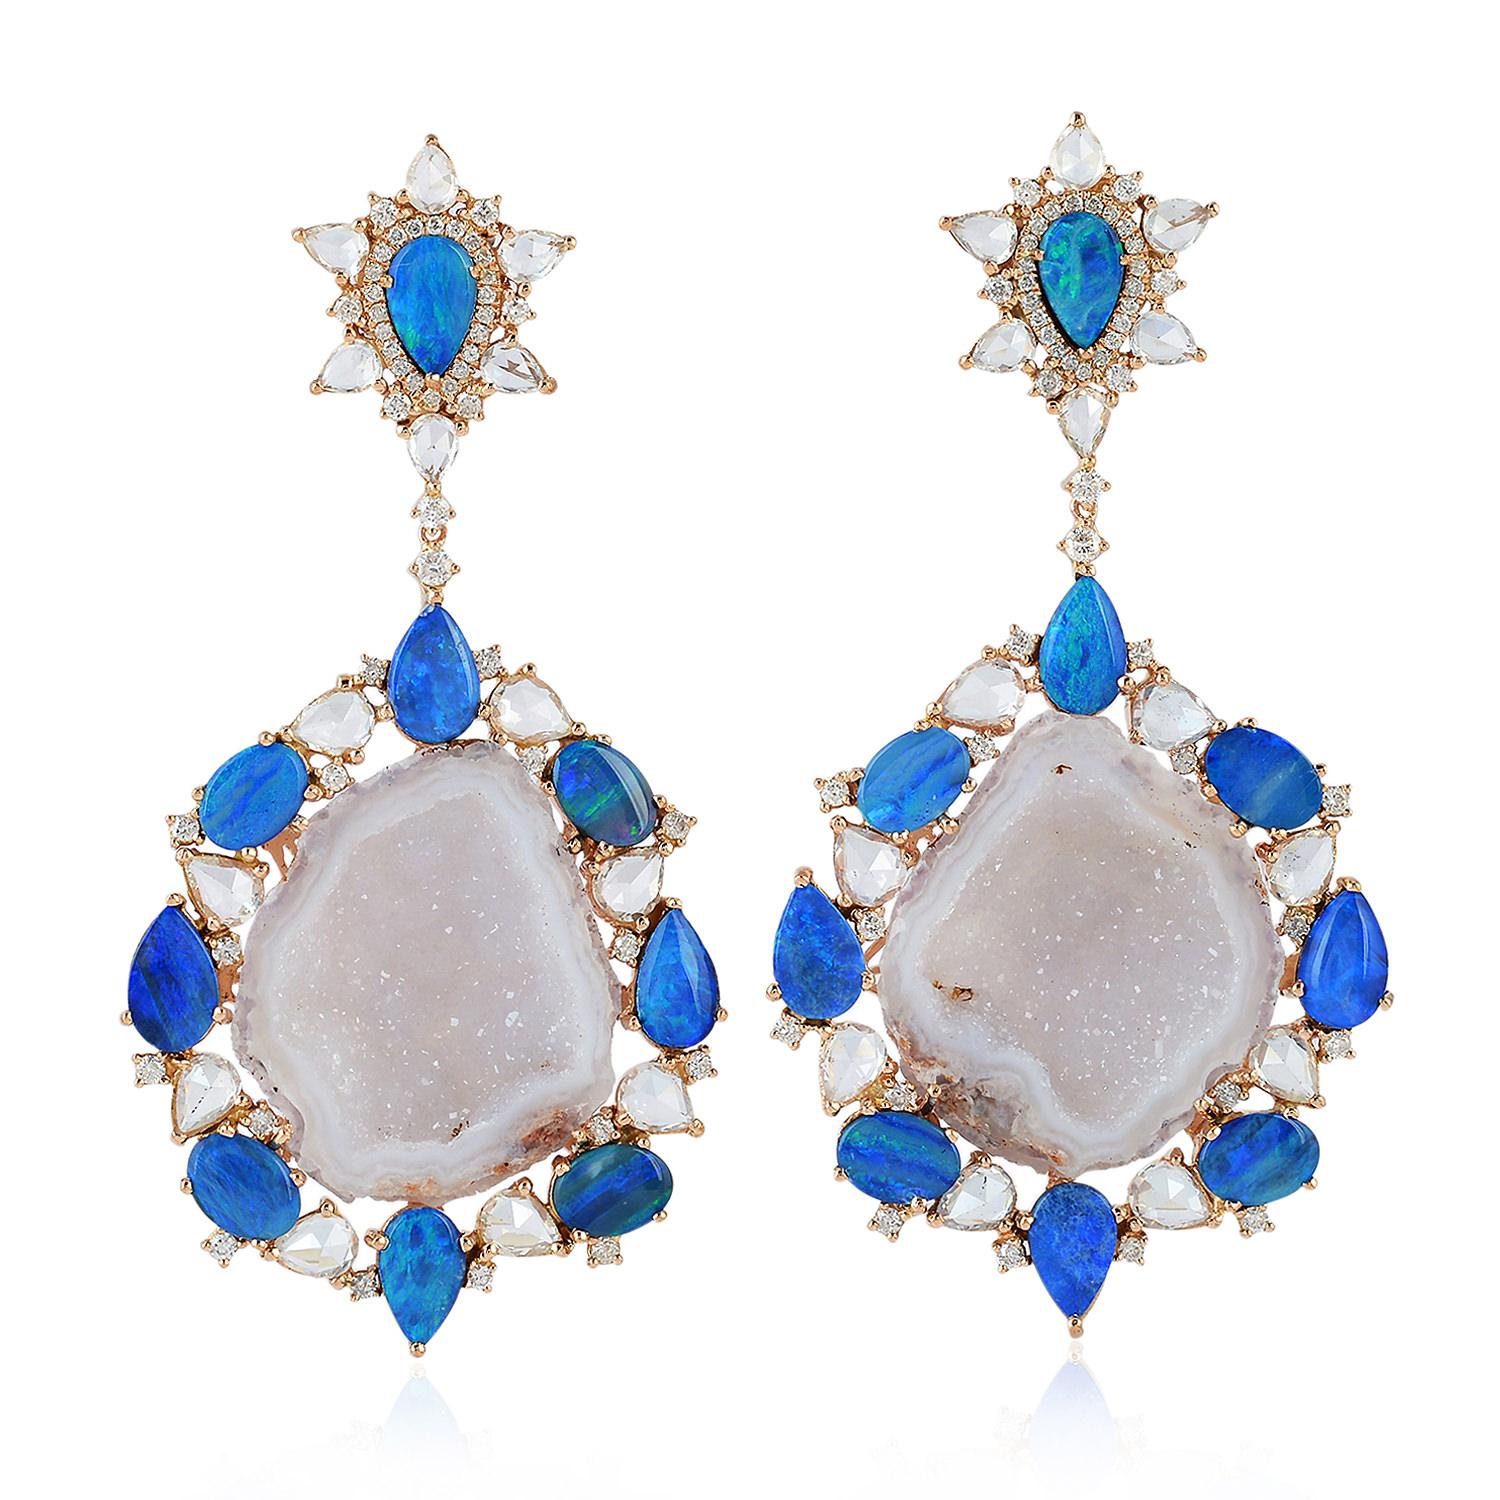 White opal geode earrings